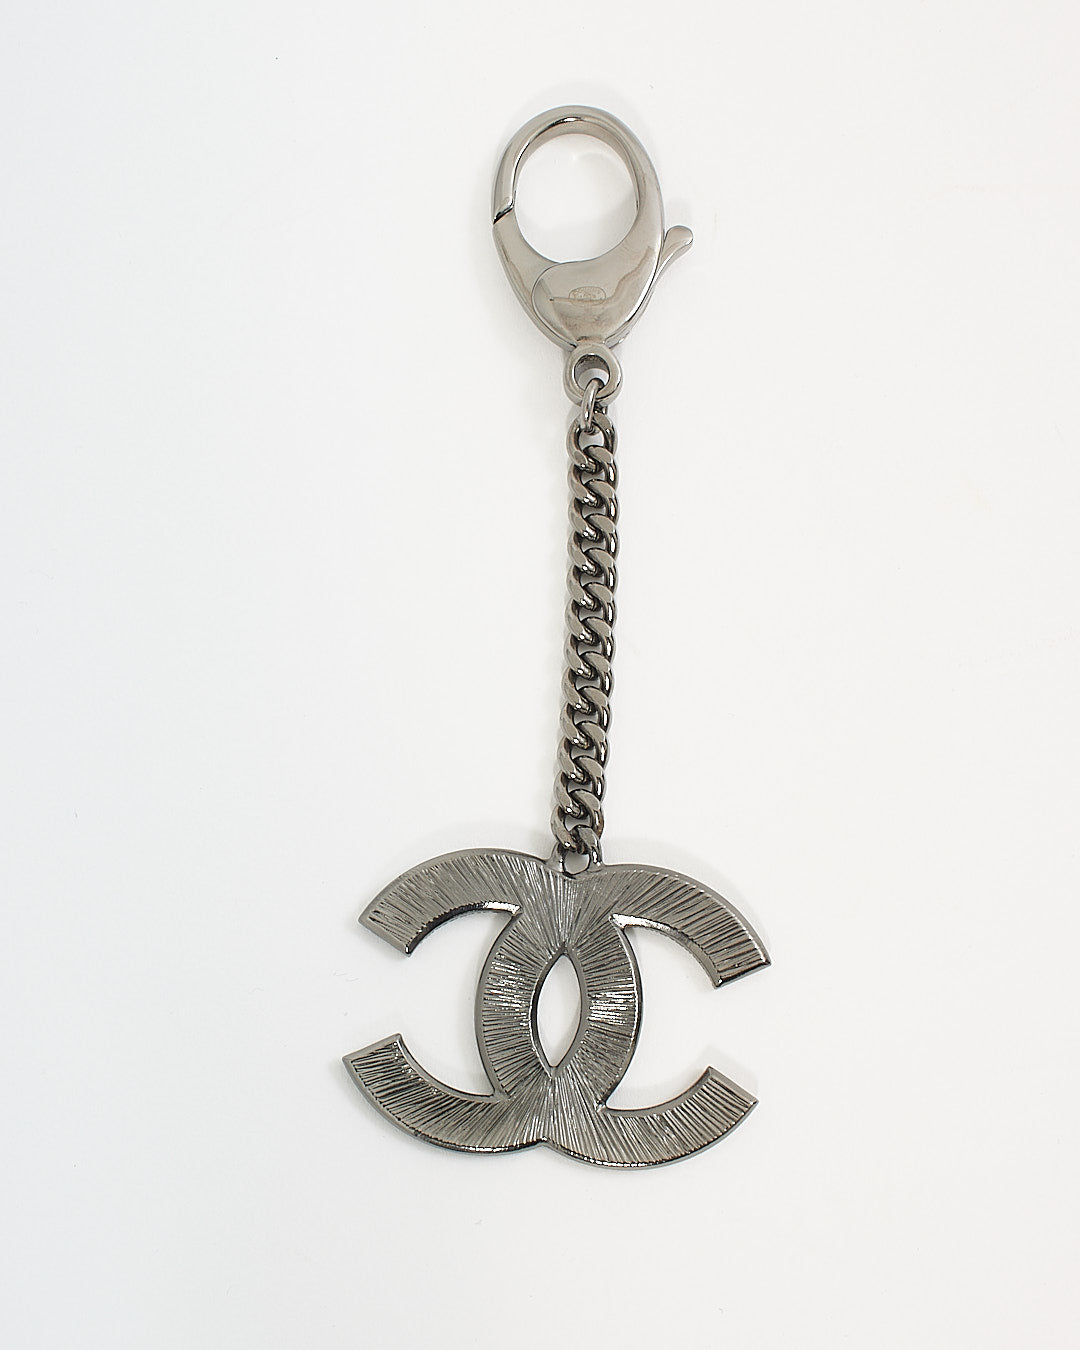 Porte-clés avec logo CC N/B entrelacé argenté Chanel